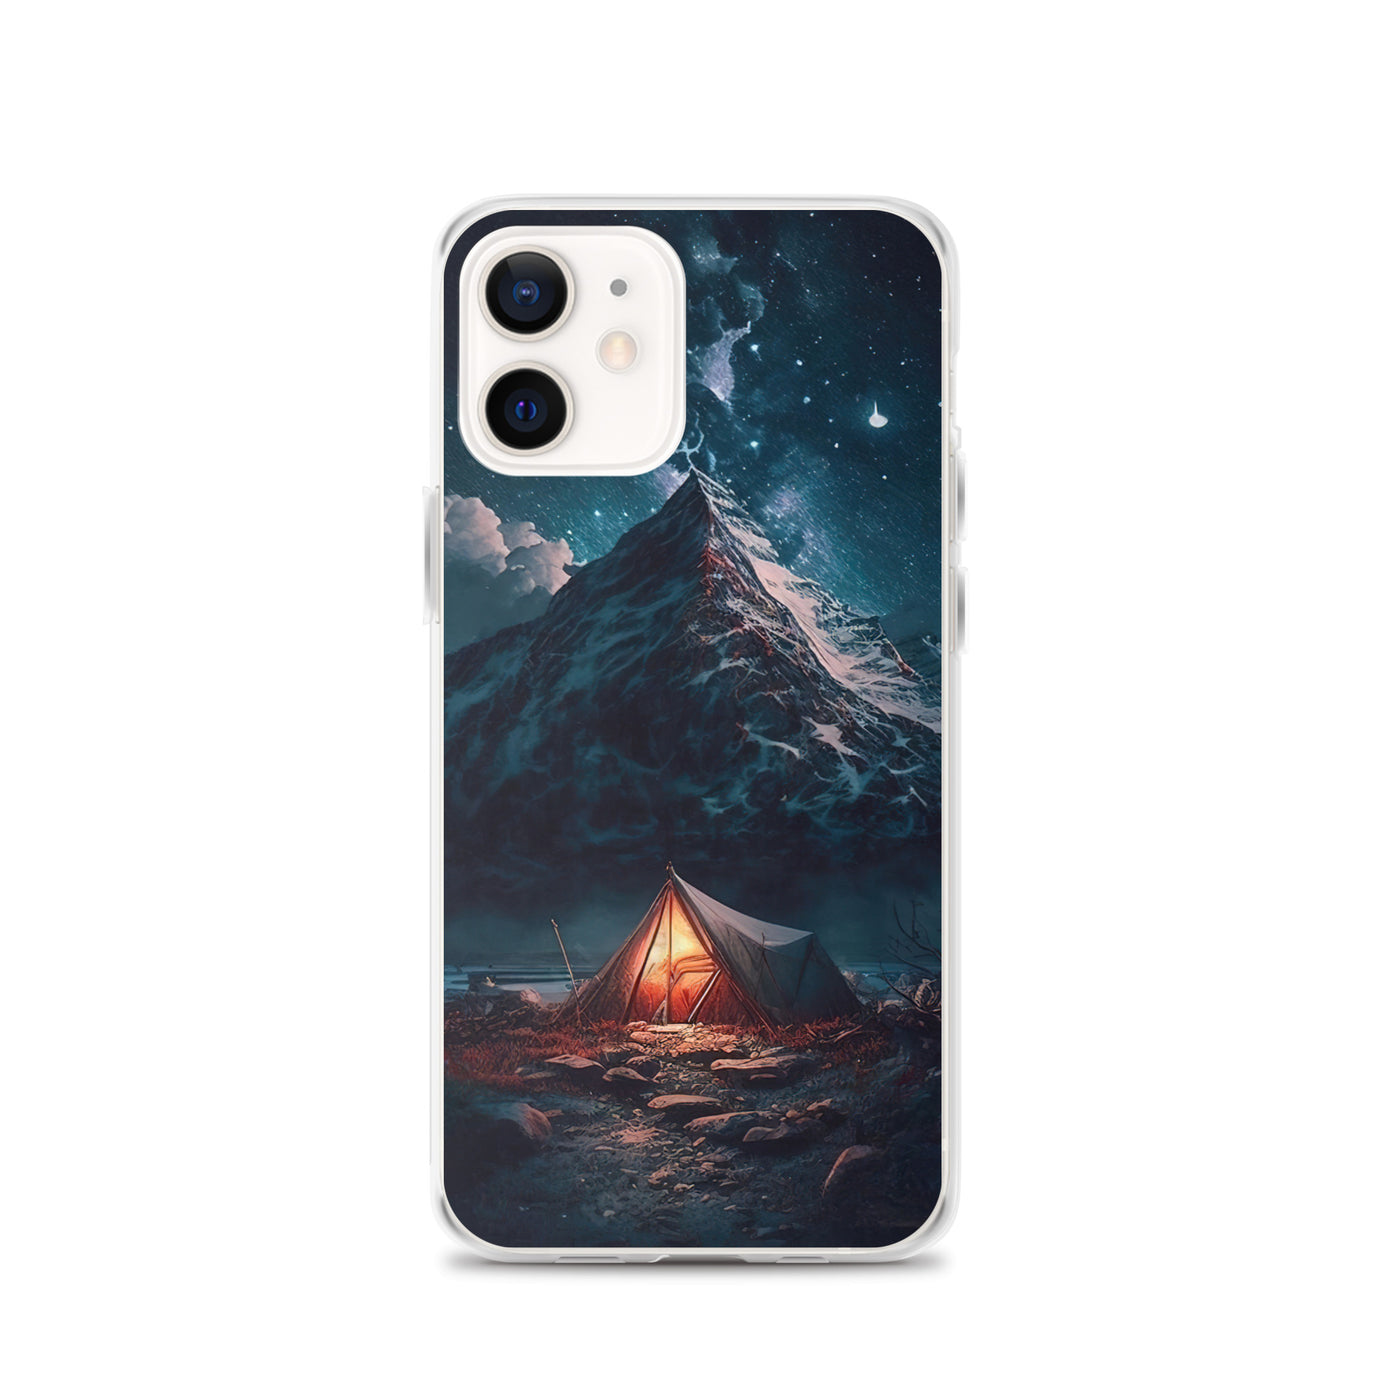 Zelt und Berg in der Nacht - Sterne am Himmel - Landschaftsmalerei - iPhone Schutzhülle (durchsichtig) camping xxx iPhone 12